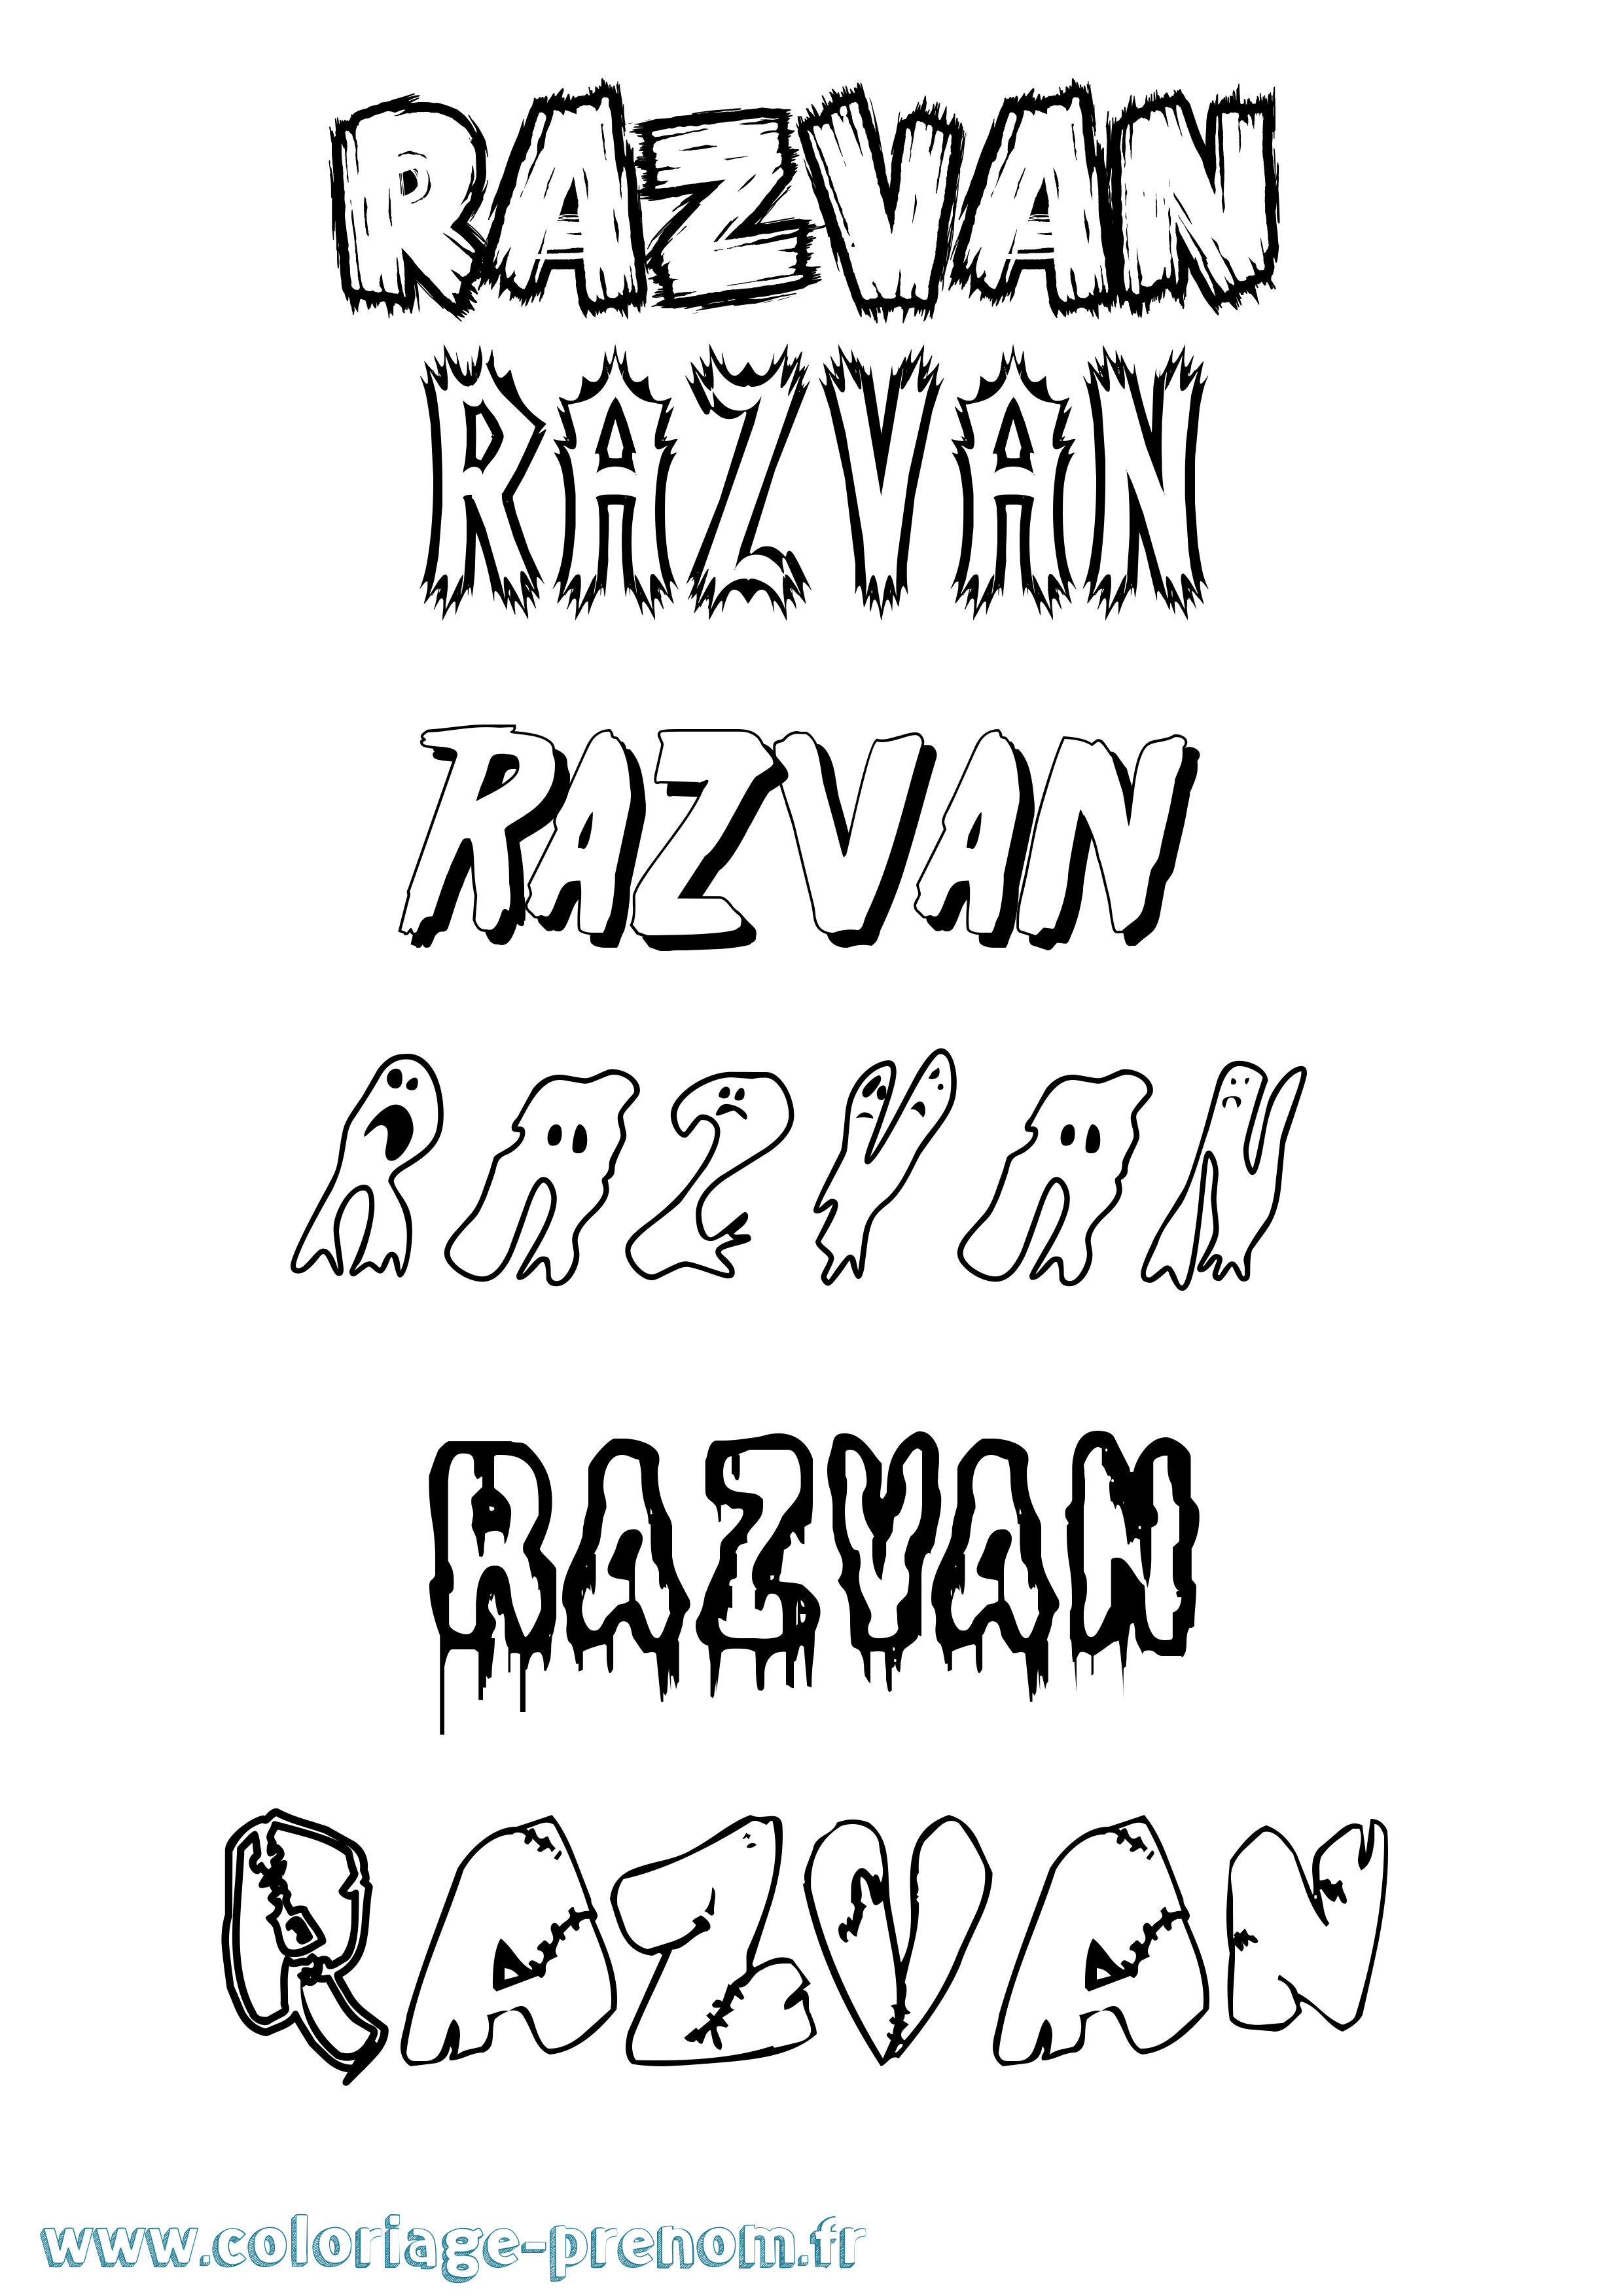 Coloriage prénom Razvan Frisson